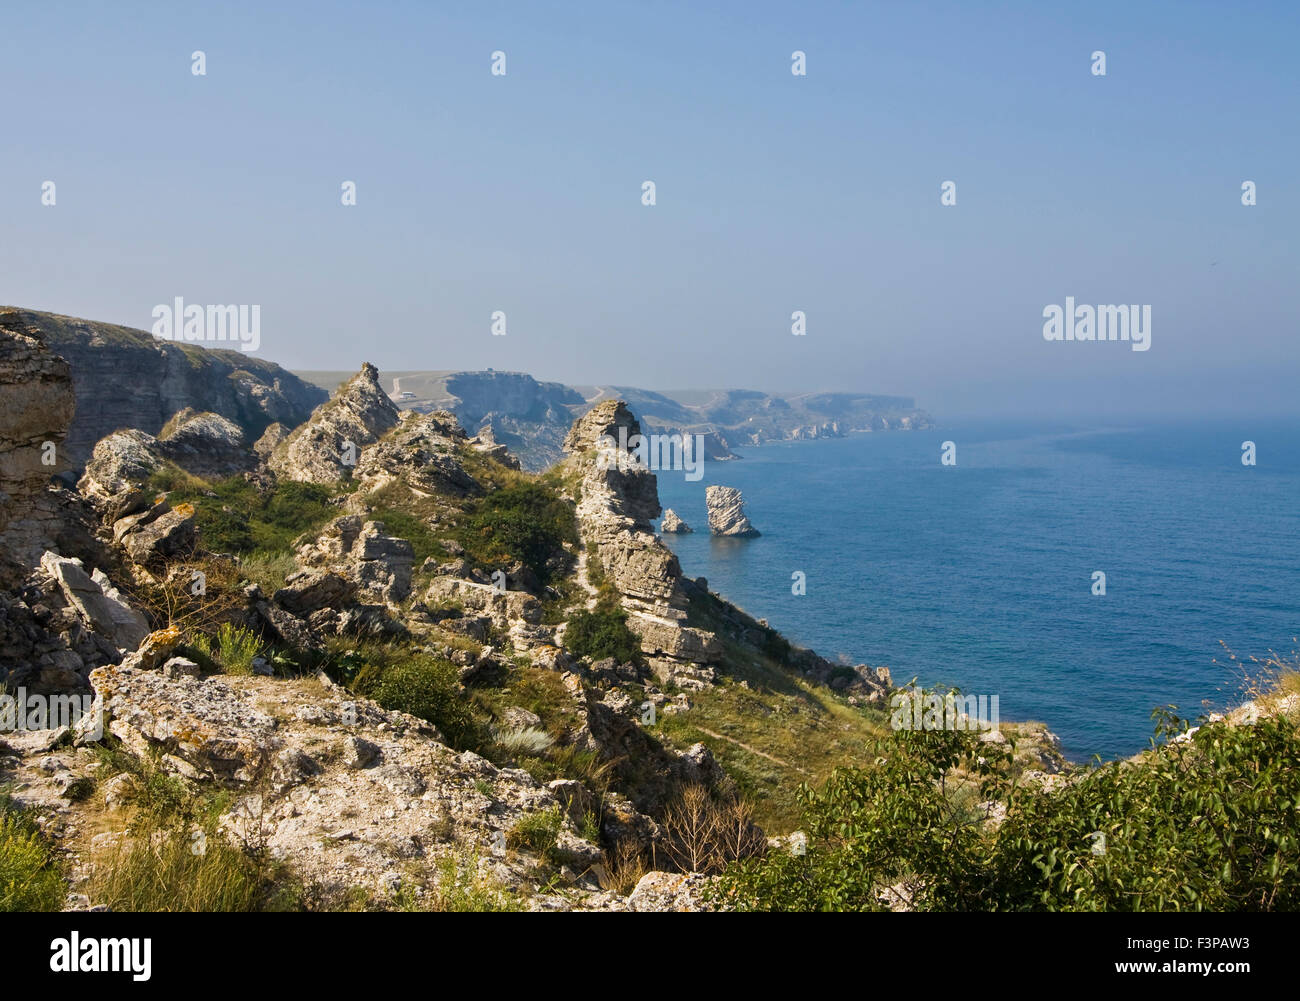 Sea landscape with rocks, recorded in place Tarhankut in region Crimea on Black sea. Stock Photo